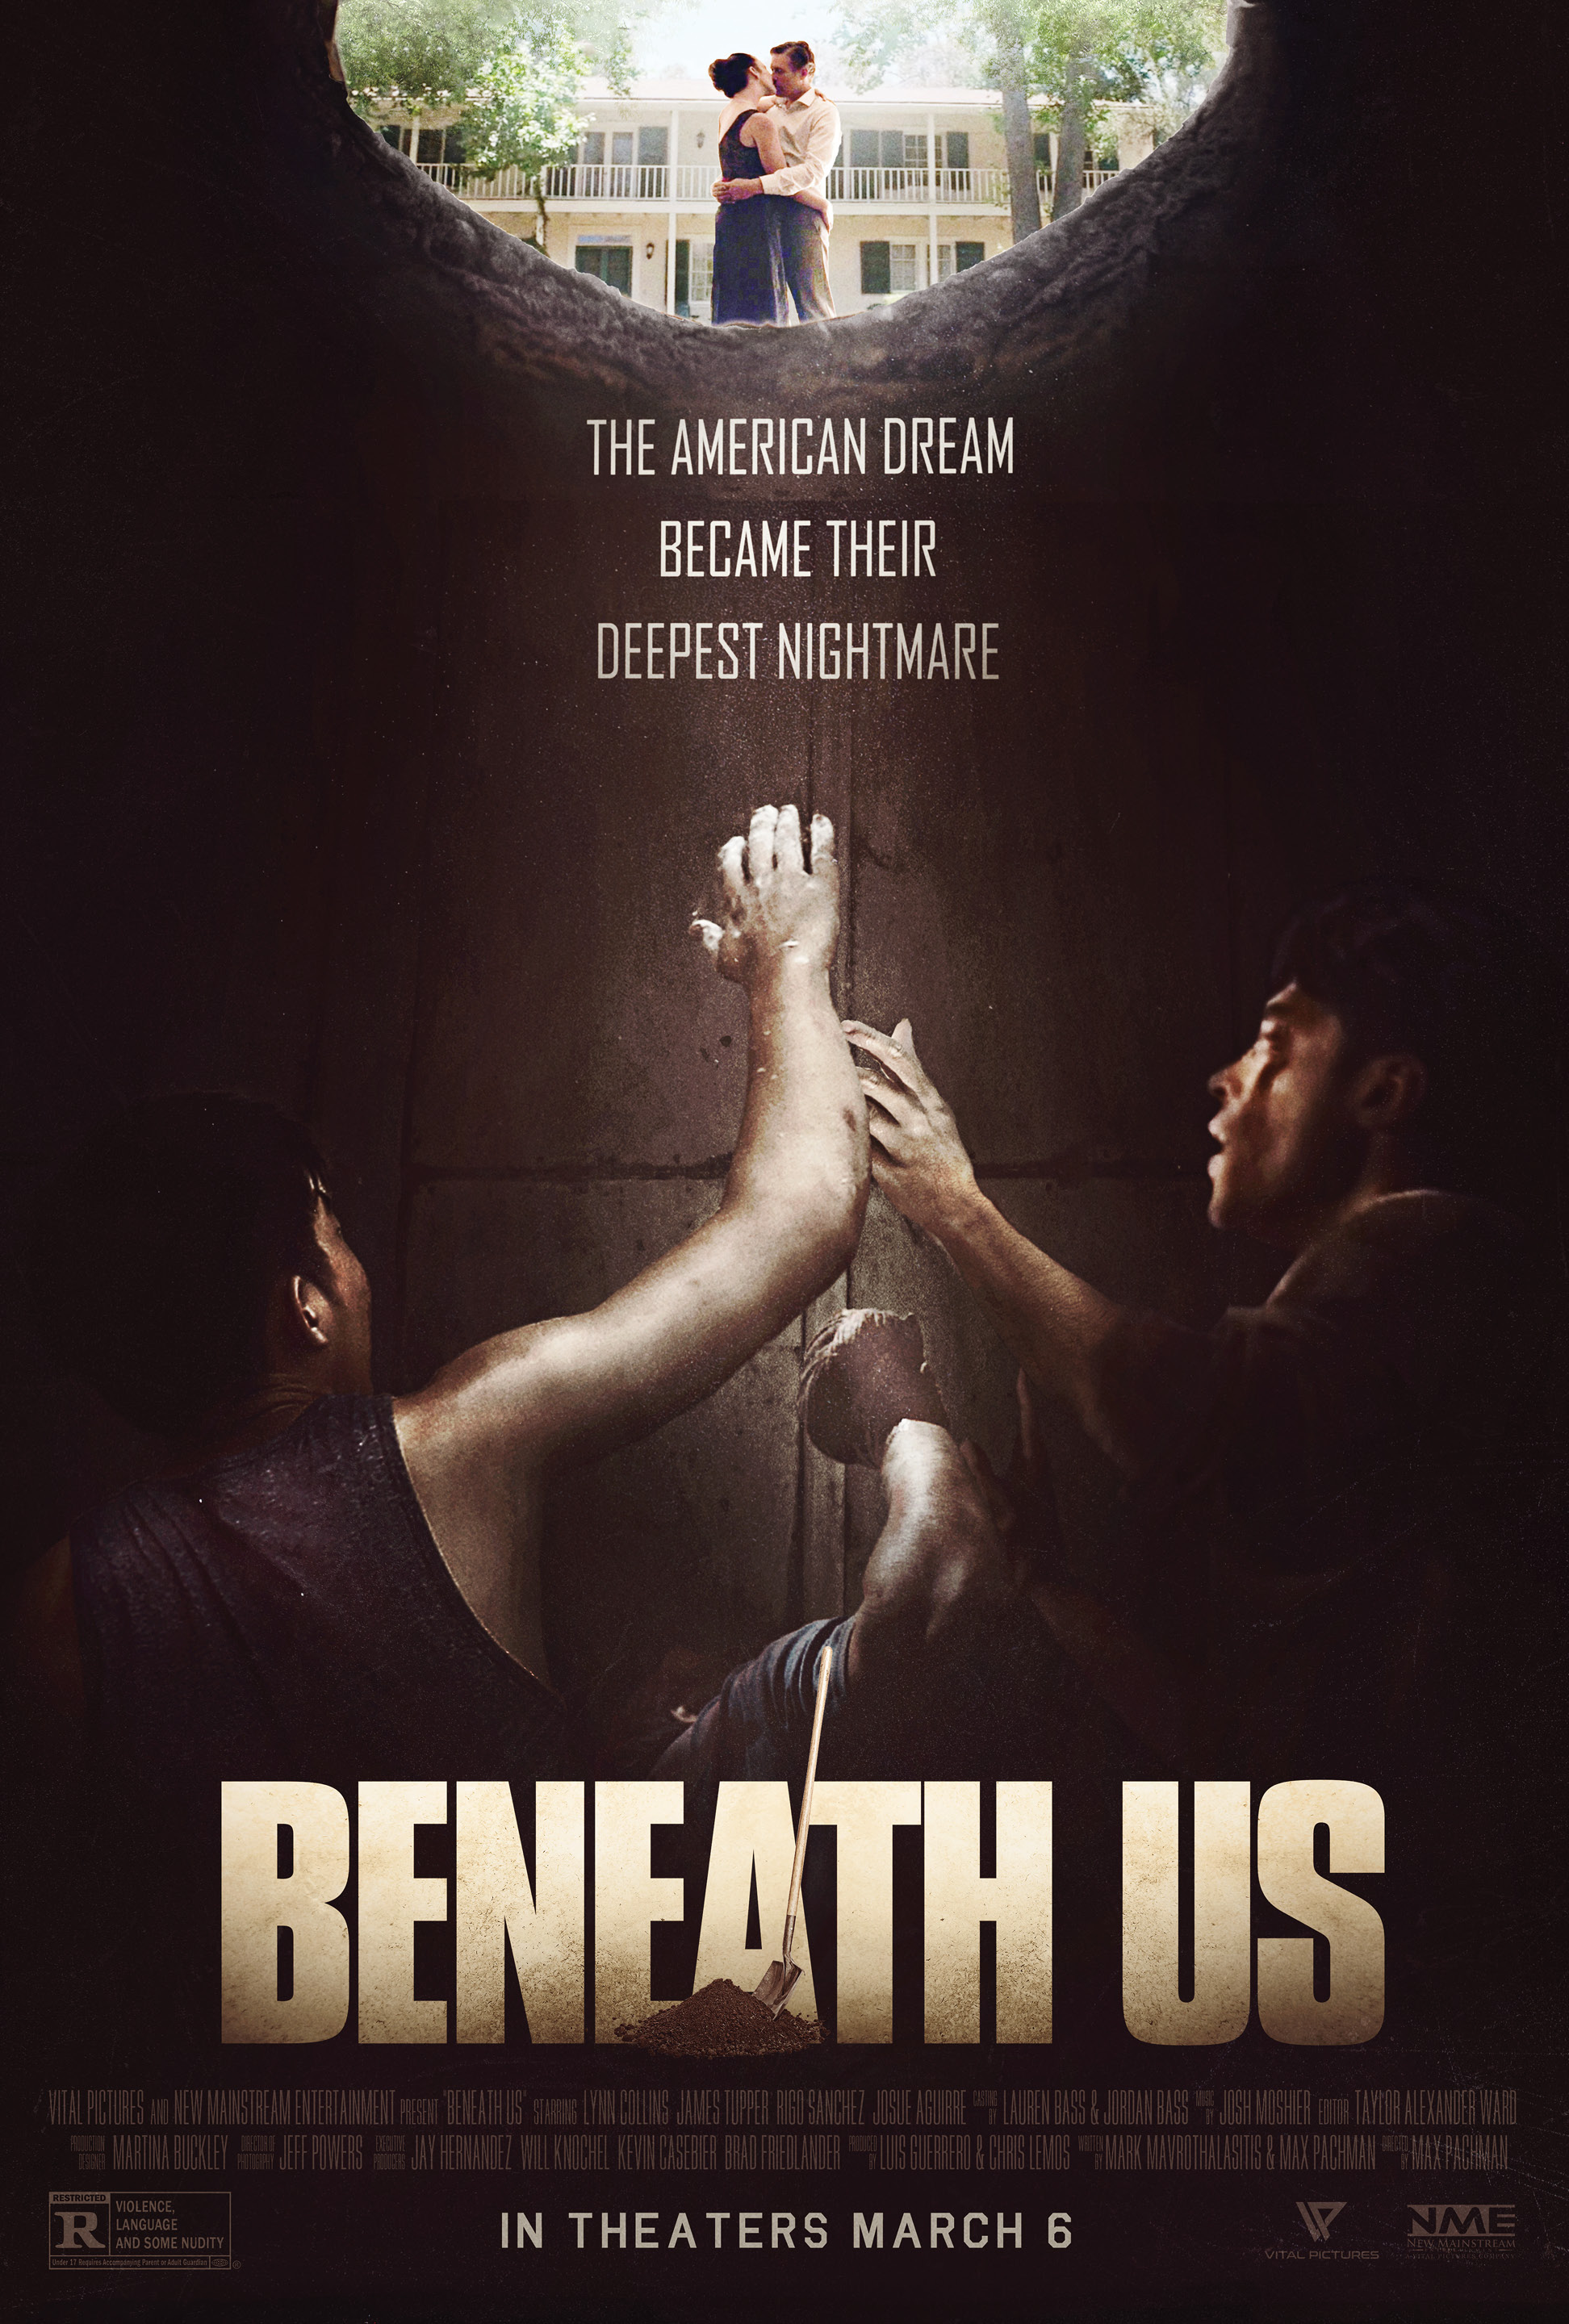 Beneath Us